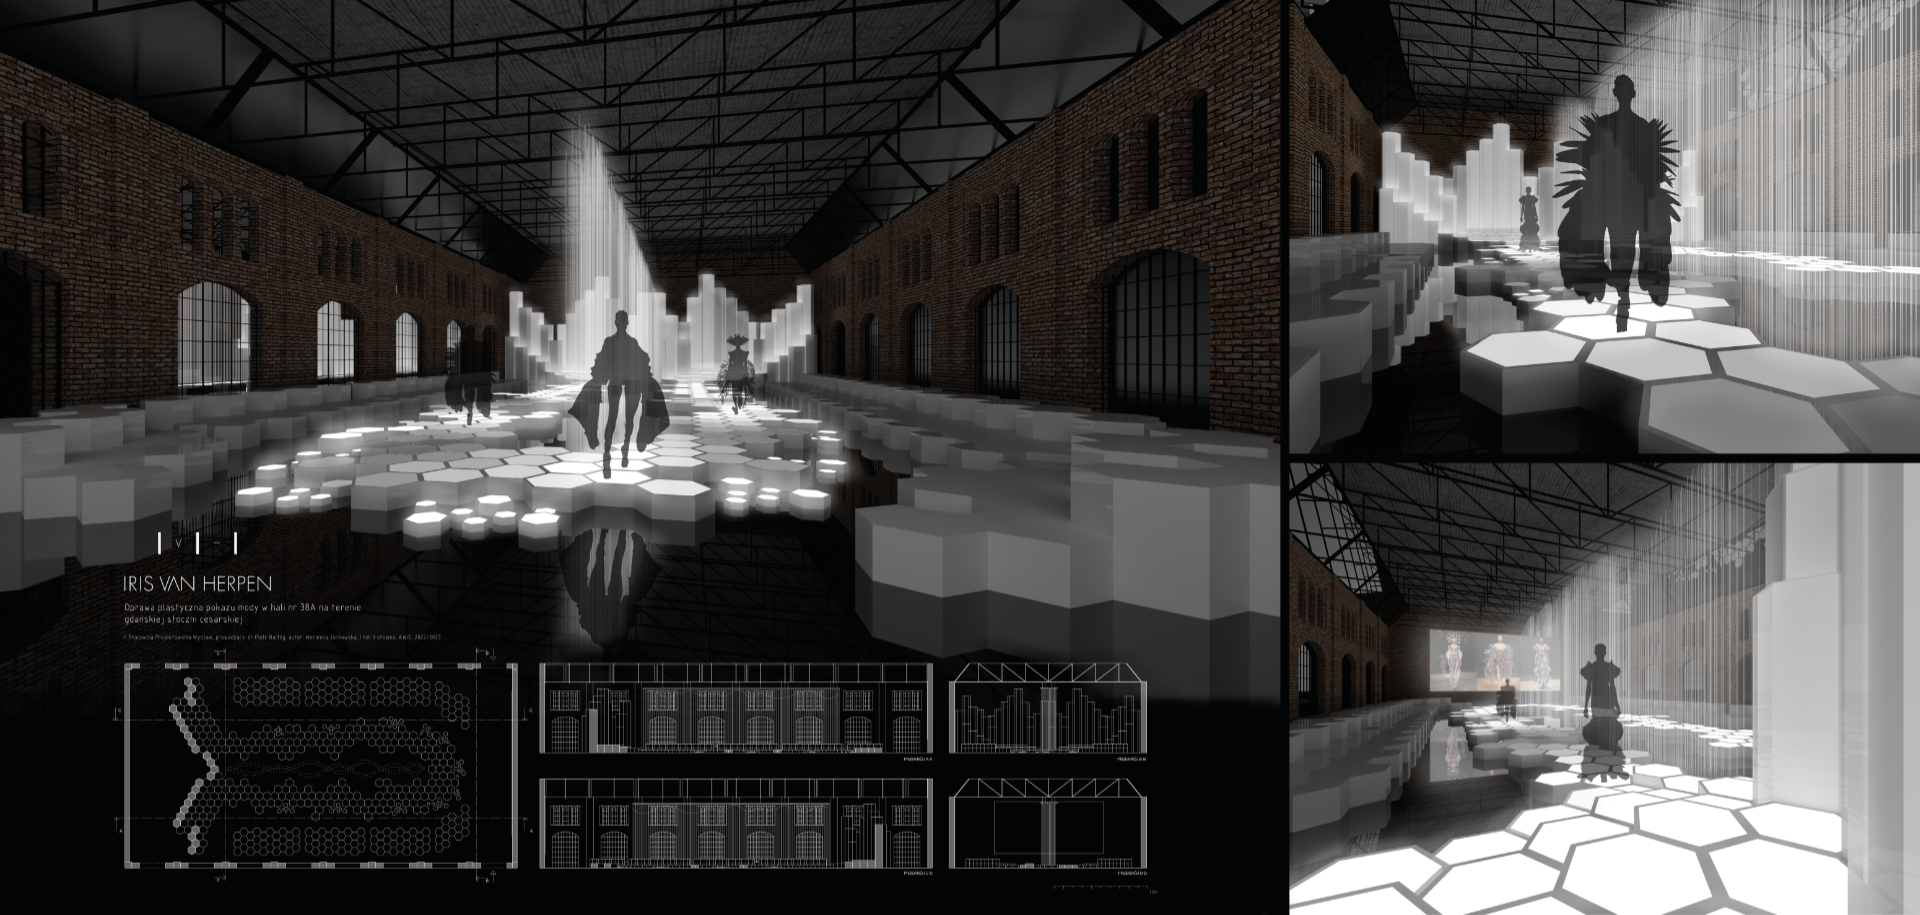 Projekt koncepcyjny oprawy plastycznej pokazu mody Iris van Herpen, zawierający komputerowe wizualizacje barwnych widoków perspektywicznych, ukazujących przestrzeń ekspozycji z punktu widzenia gościa, uczestnika oraz rzut.